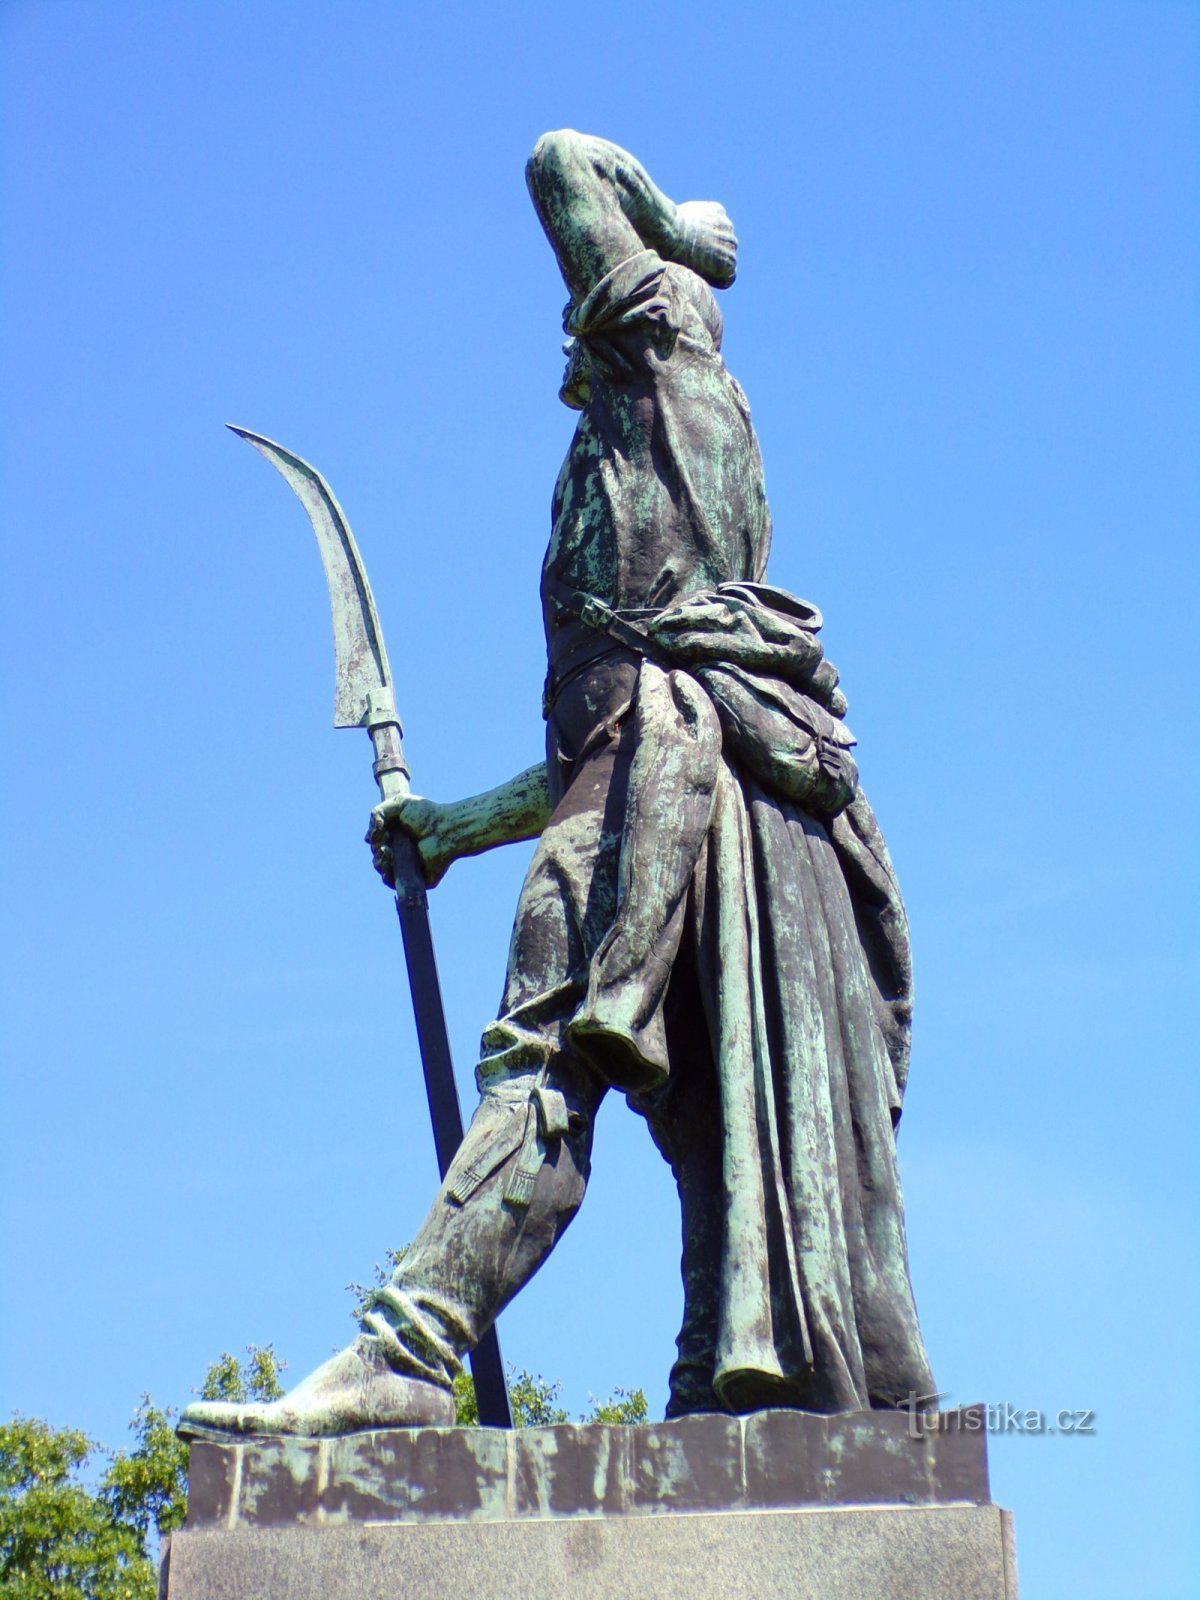 Monumento alla rivolta contadina del 1775 (Chlumec nad Cidlinou, 5.6.2022 luglio XNUMX)